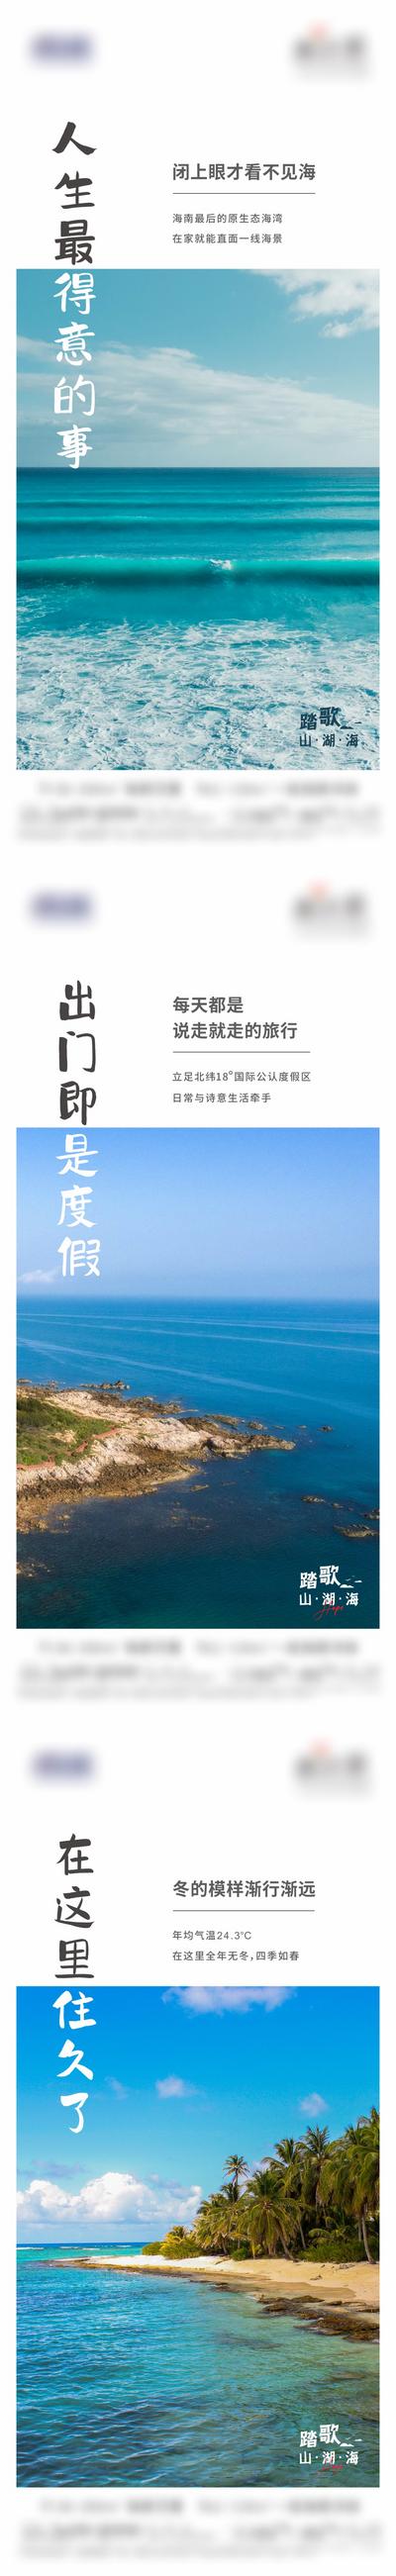 南门网 广告 海报 地产 文旅 系列 价值点 沙滩 海洋 大海 海景房 品质